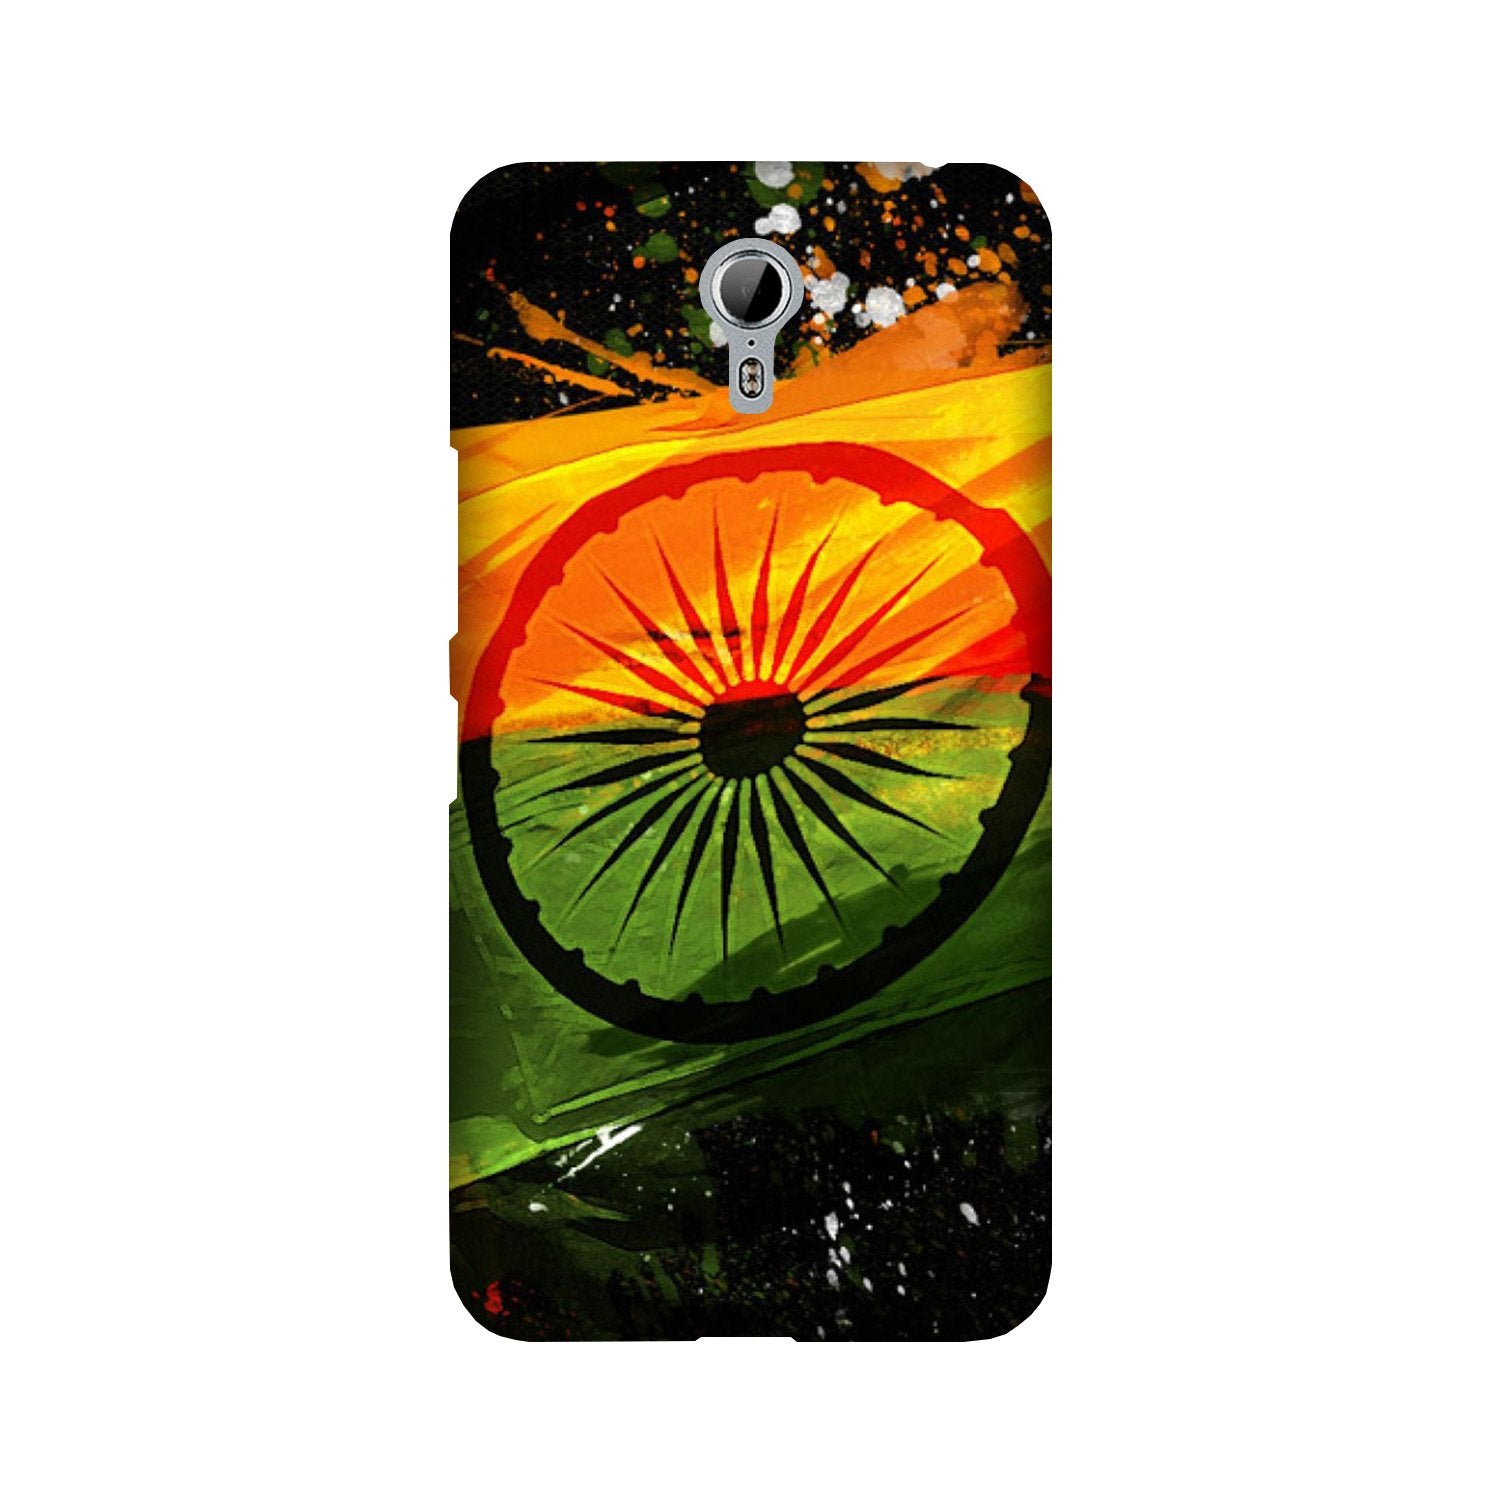 Indian Flag Case for Lenovo Zuk Z1(Design - 137)